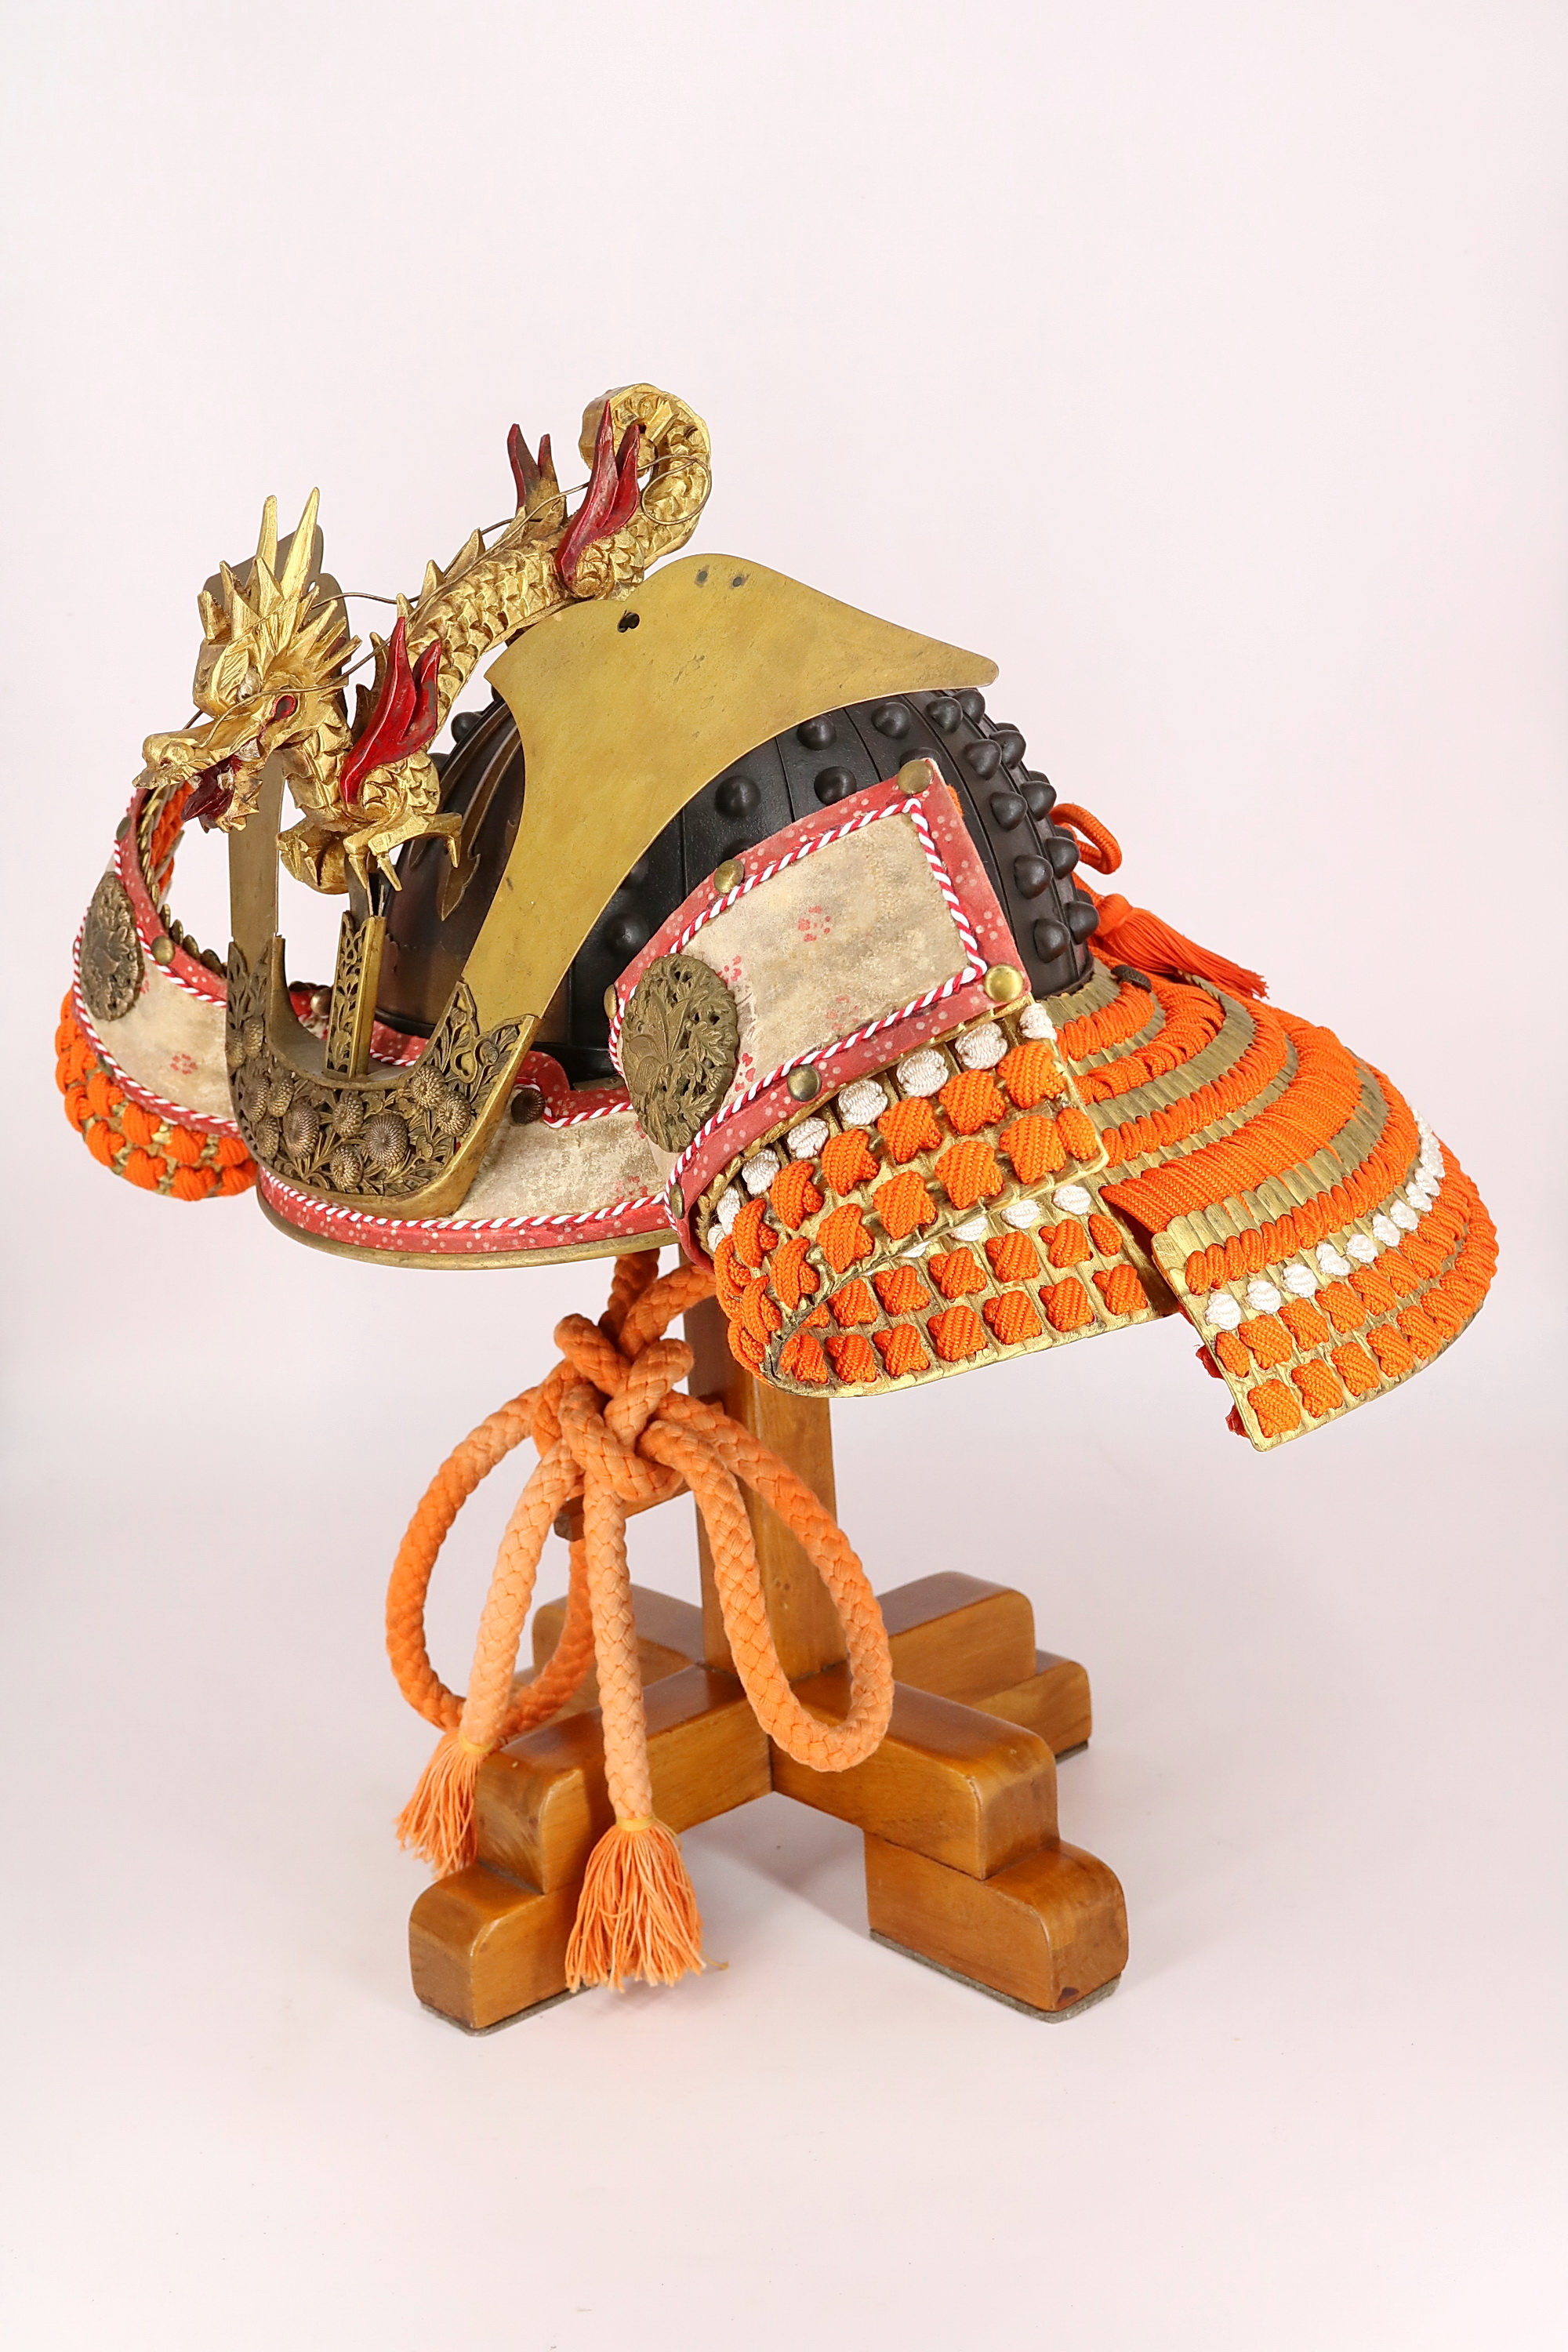 Самурайский шлем Кабуто. Купить в Москве самурайские мечи, галерея Югэн,  Yugen.